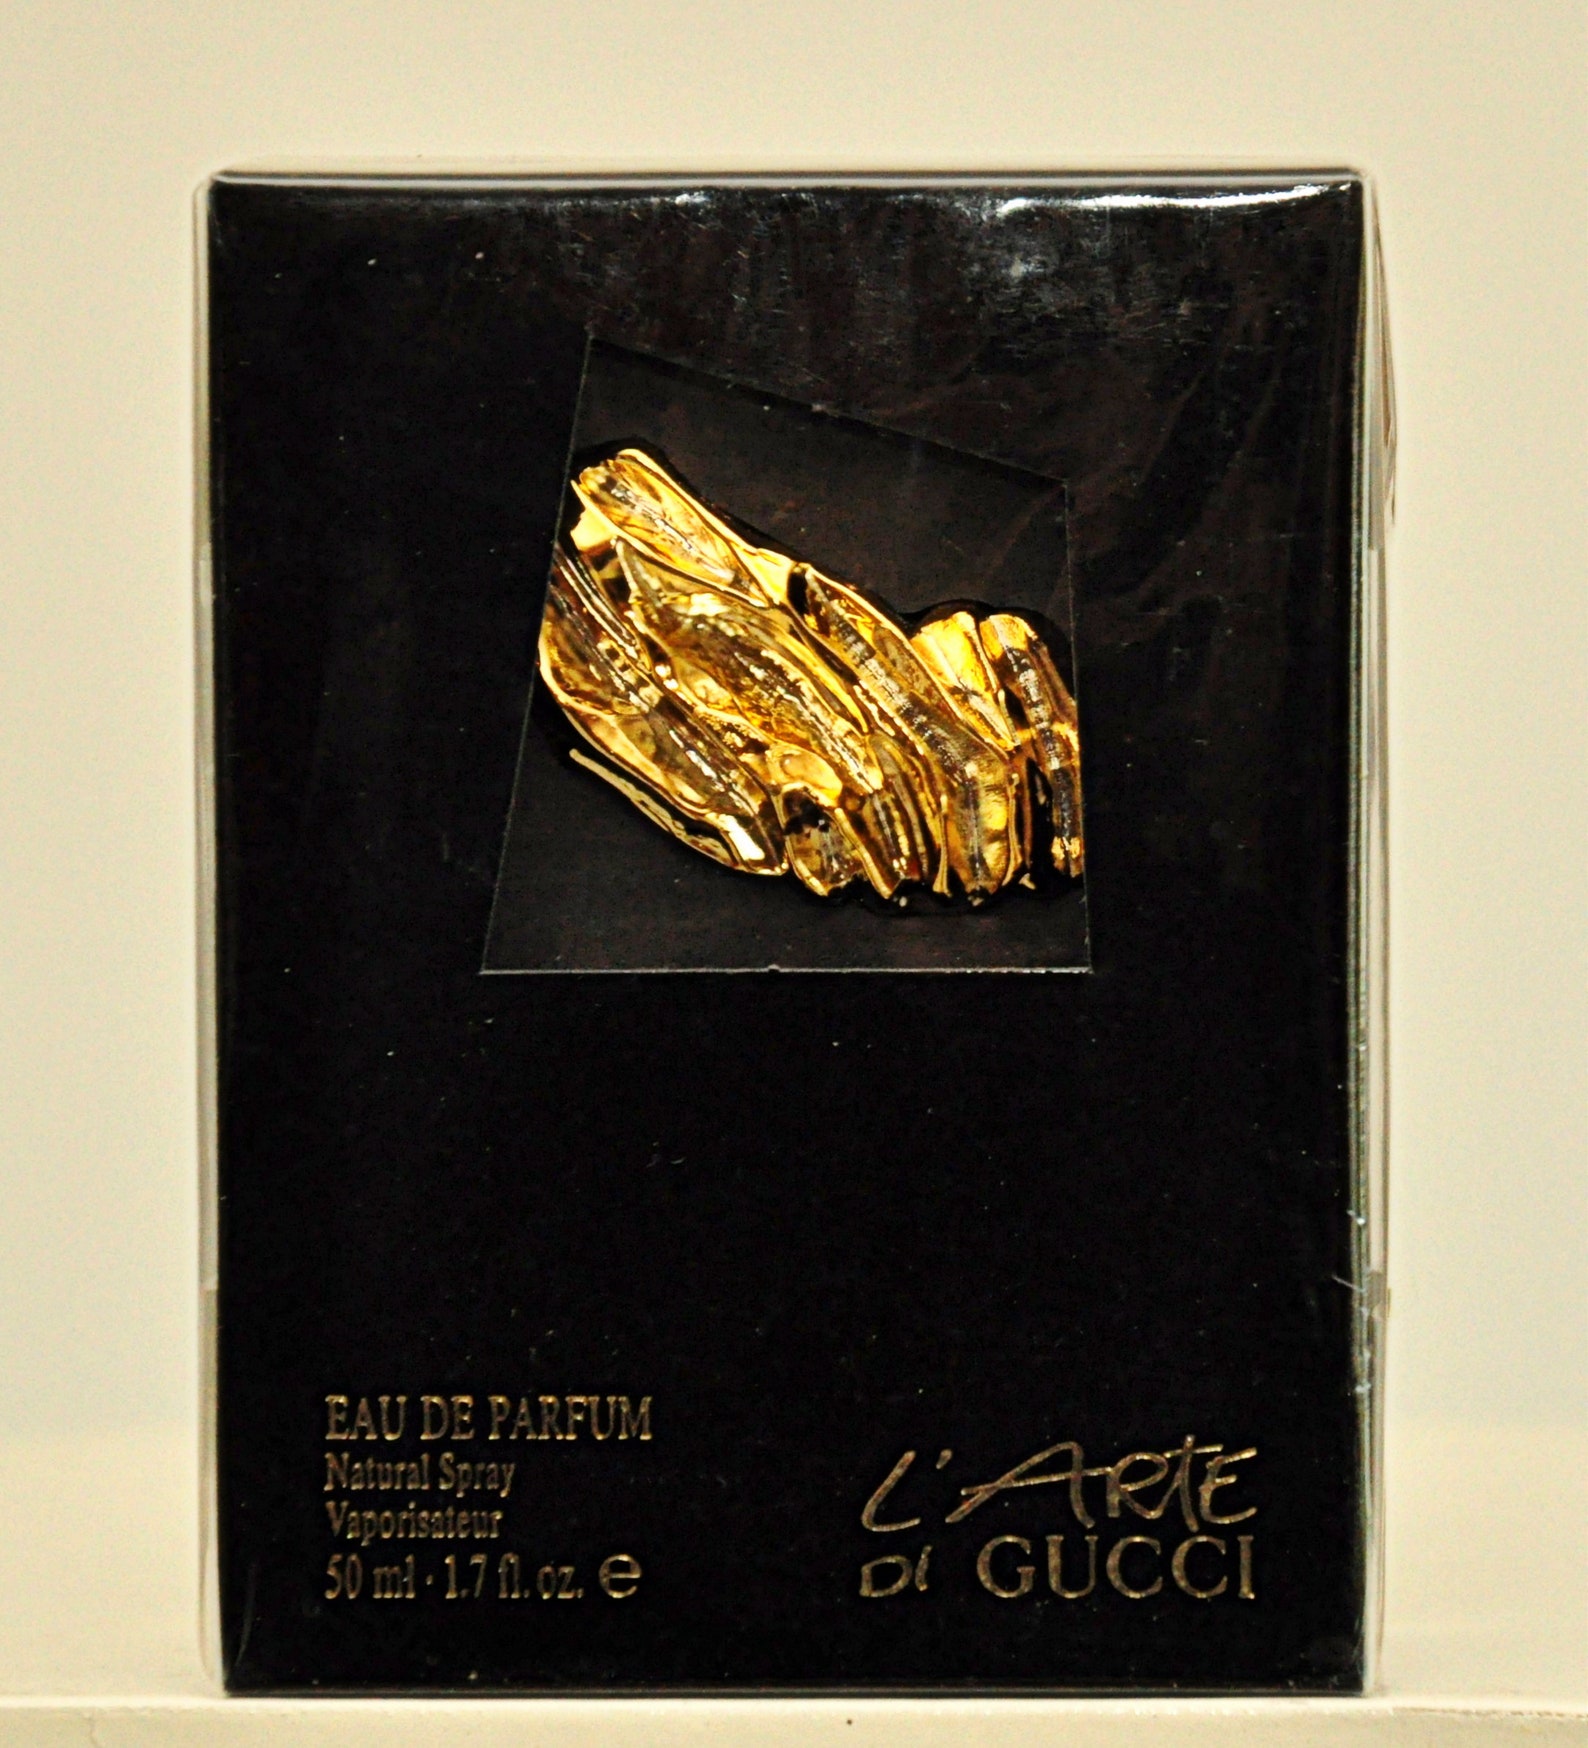 Gucci L'arte Di Gucci Eau De Parfum Edp 50ml 1.7 Fl. Oz. - Etsy UK